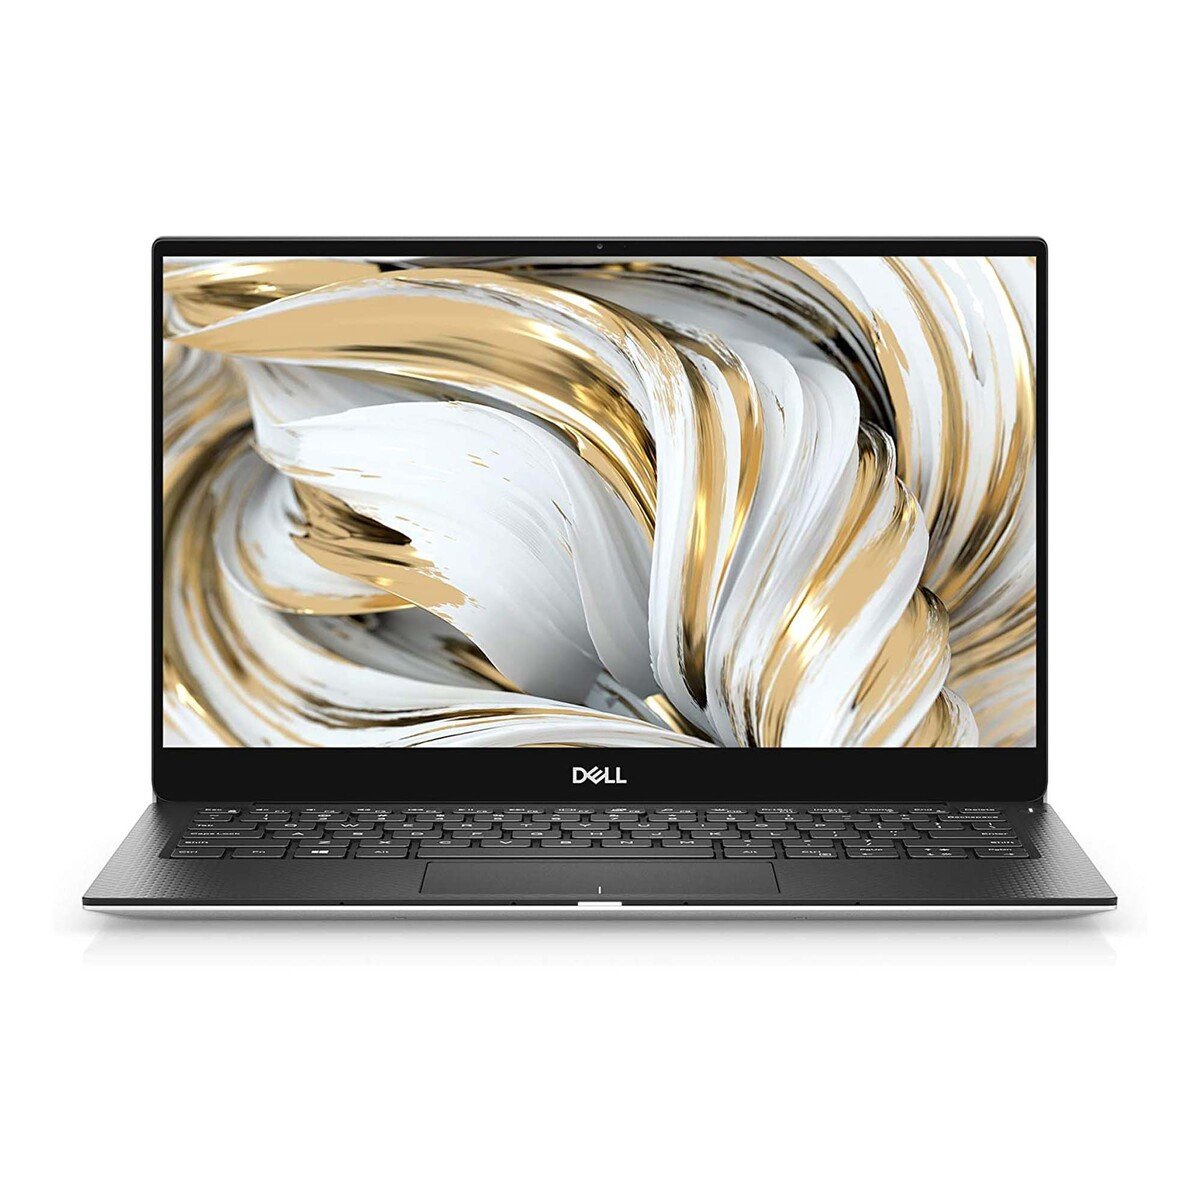 Dell XPS 13 9305 13.3 inch FHD Ultrabook (XPS13-9305-6100-SL),Intel Core i5 – 1135G7,8GB RAM,512GB SSD, 15.6"FHD,Windows 11,Silver,English-Arabic Keyboard